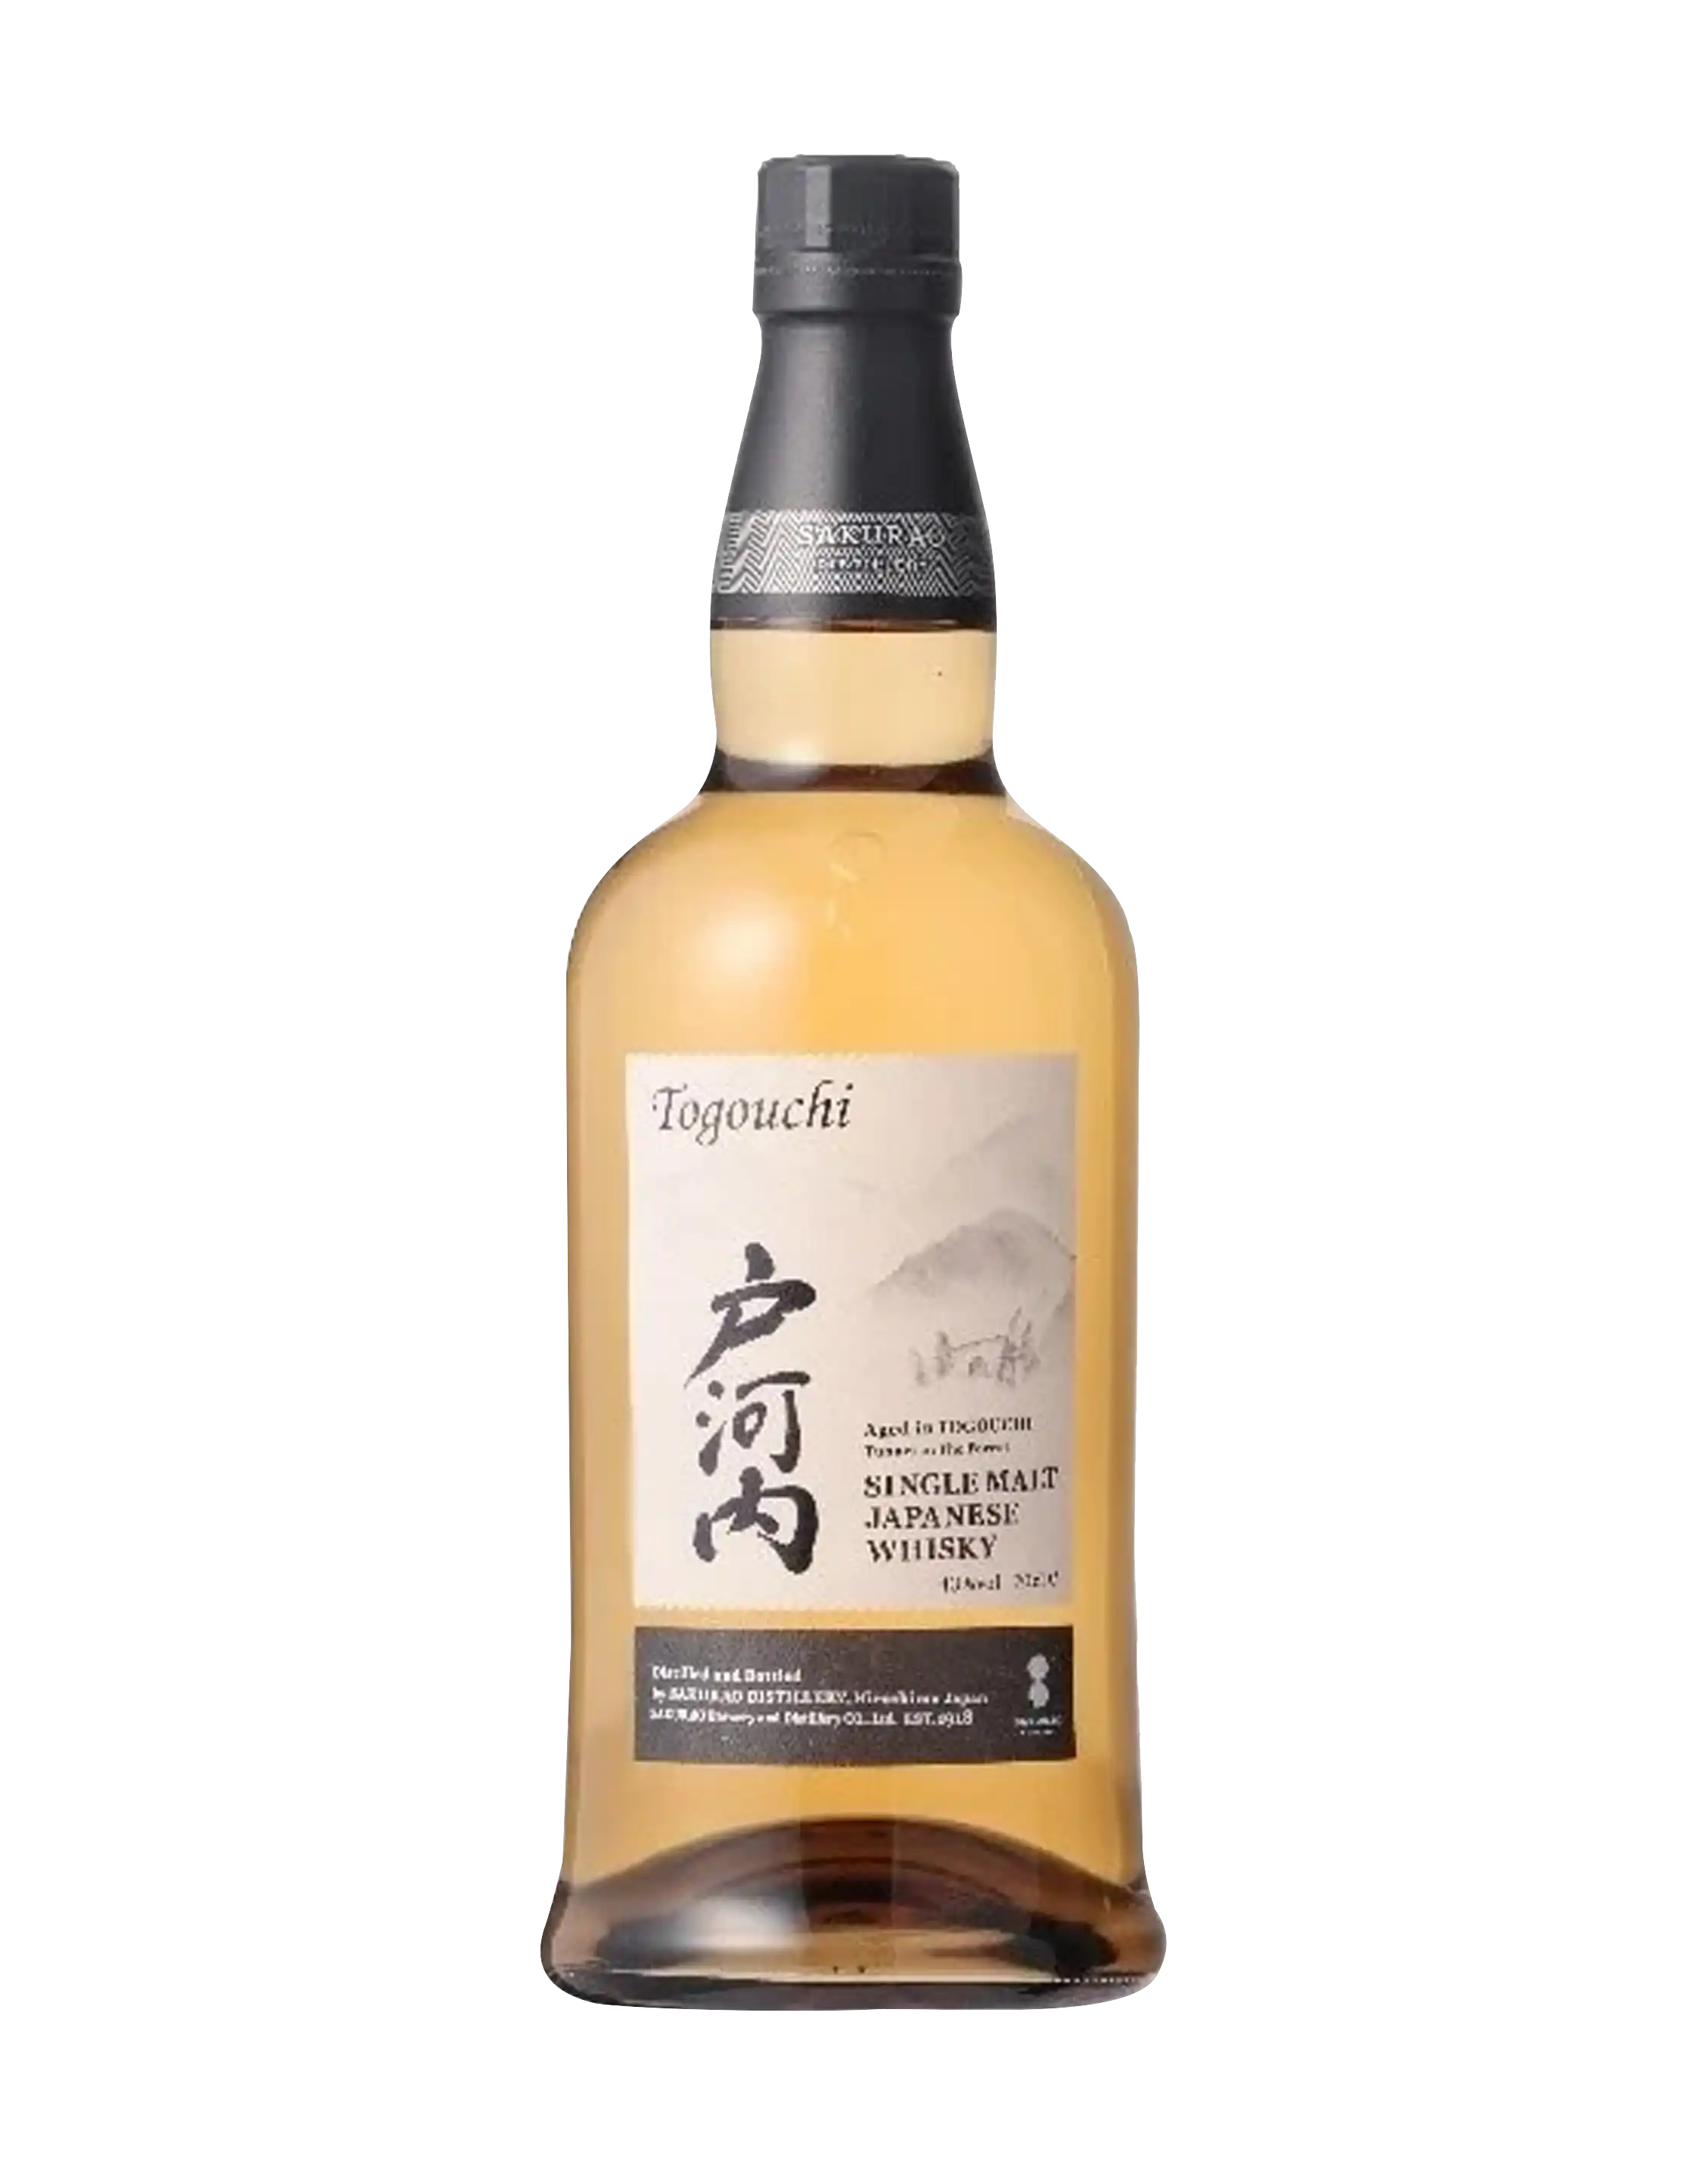 Togouchi Japanese Whisky